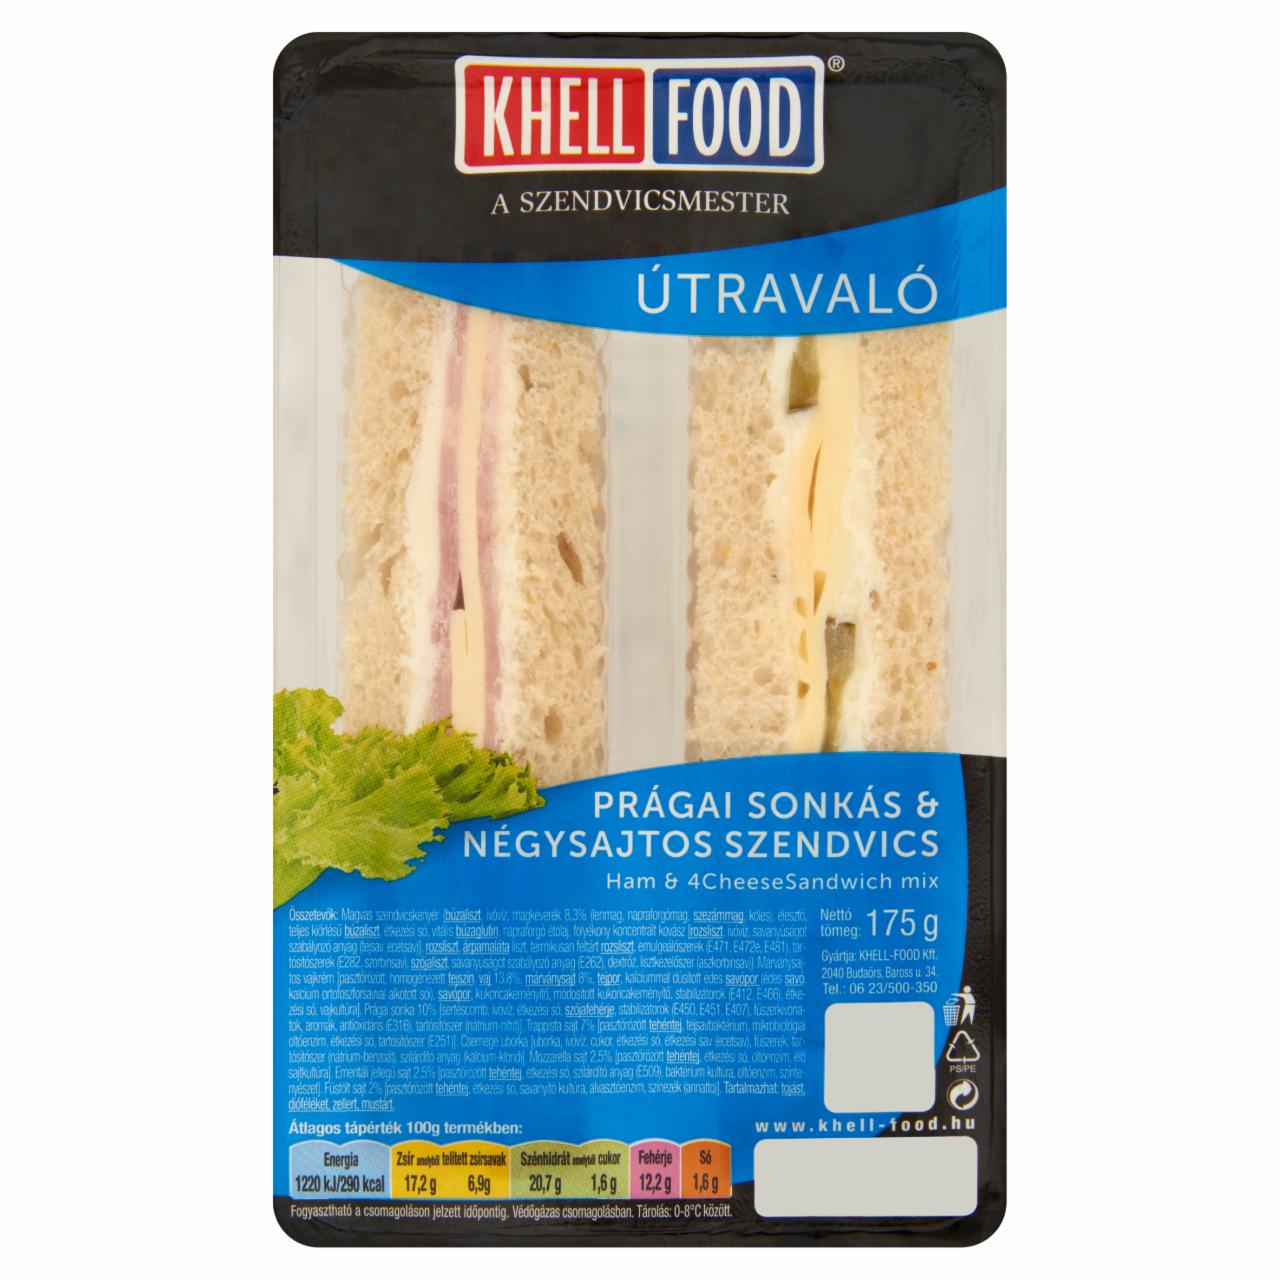 Képek - Khell-Food Útravaló prágai sonkás & négysajtos szendvics 175 g